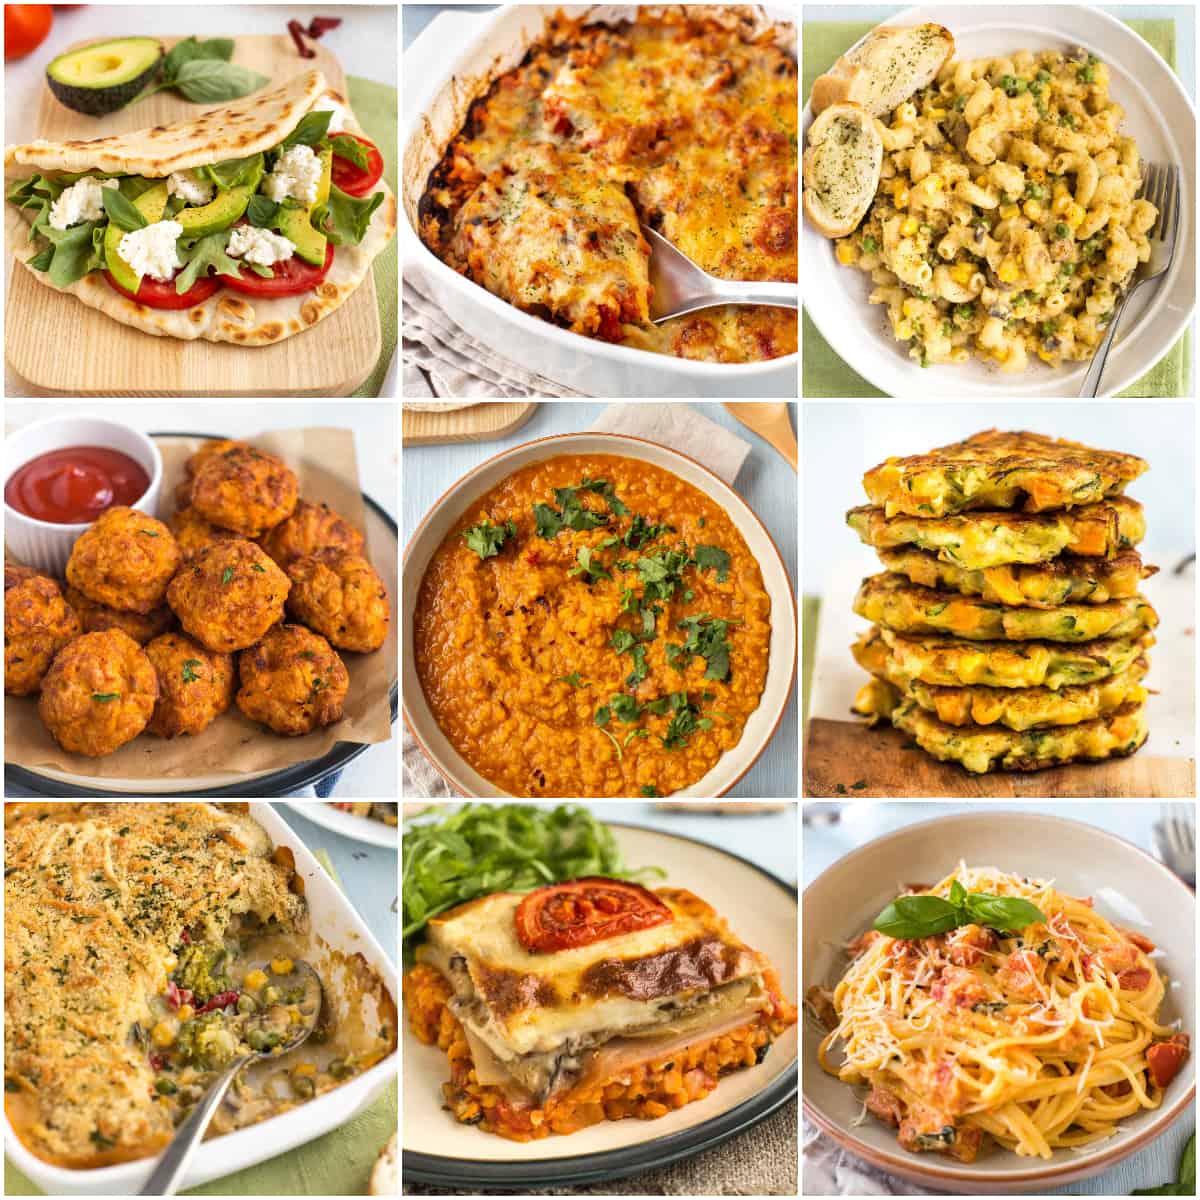 https://www.easycheesyvegetarian.com/wp-content/uploads/2022/08/cheap-vegetarian-meals-featured.jpg